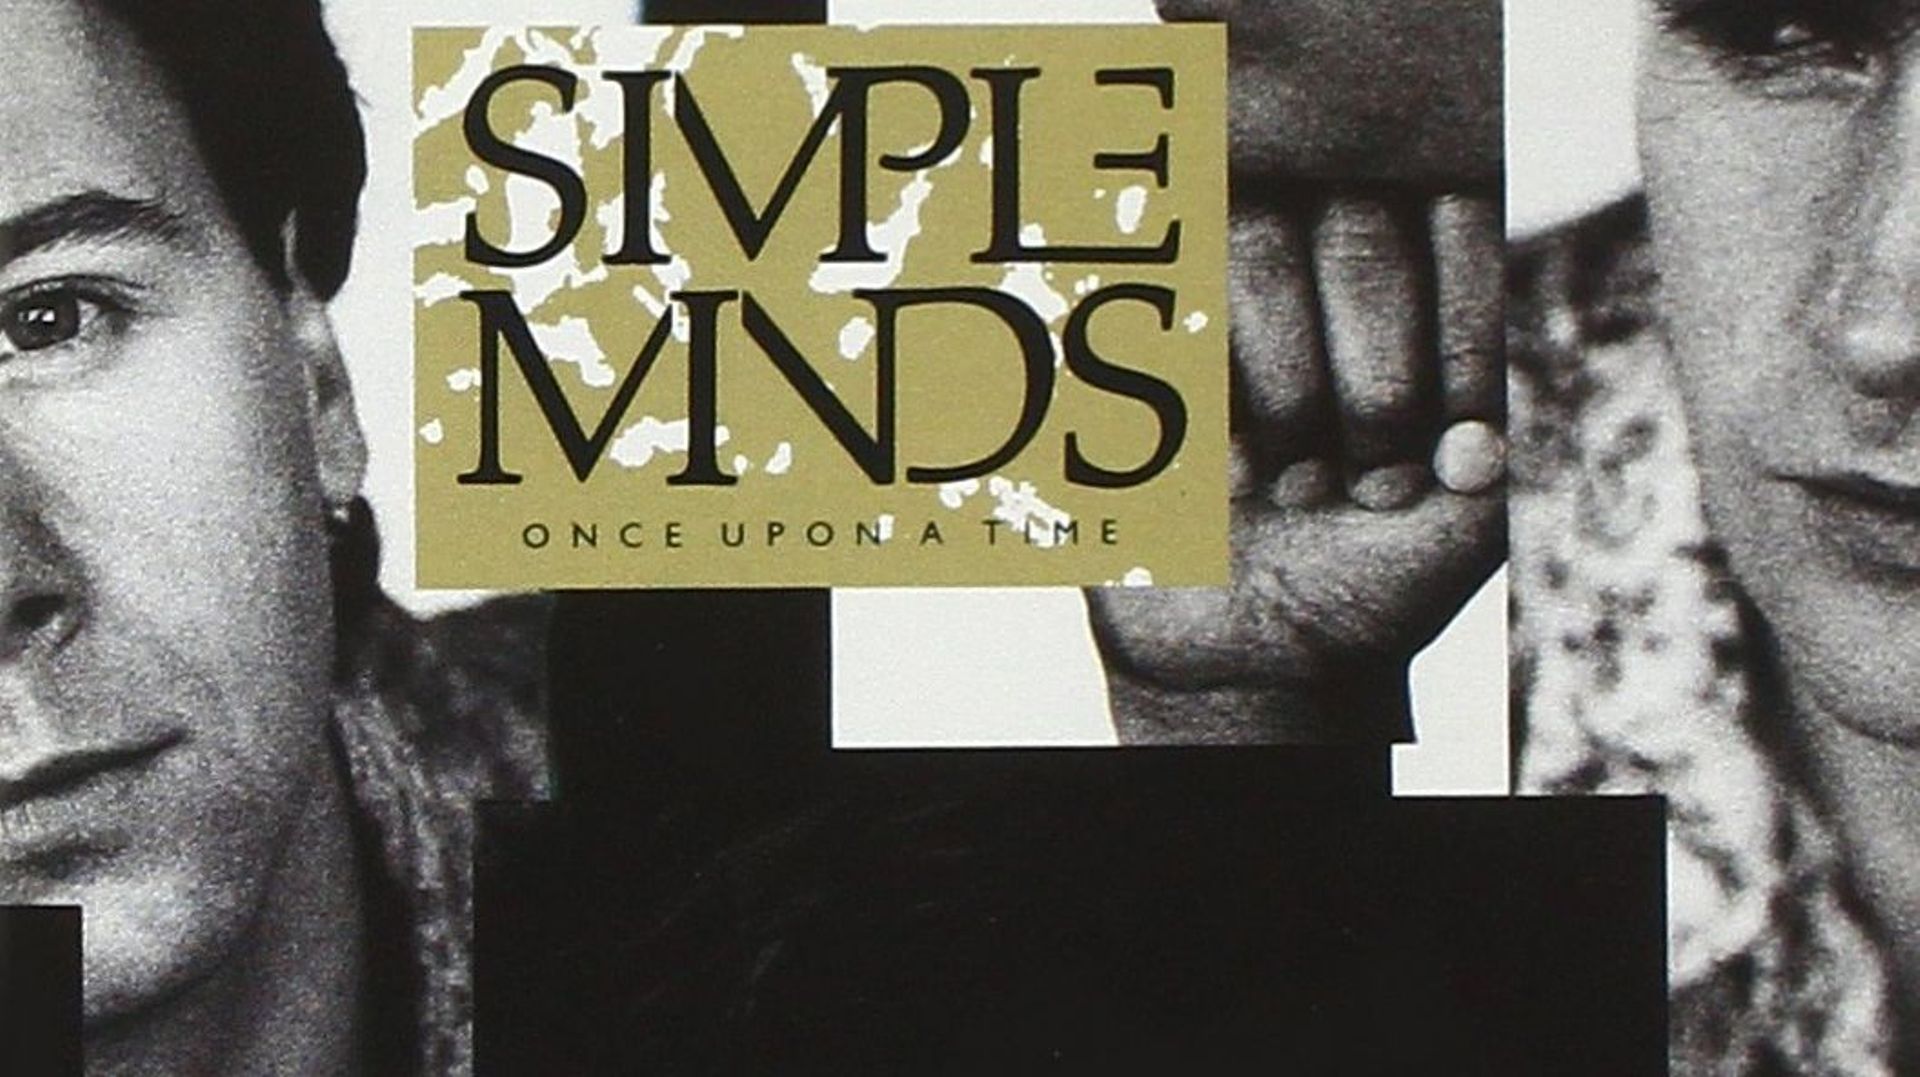 Les 35 ans de "Once Upon A Time" de Simple Minds 